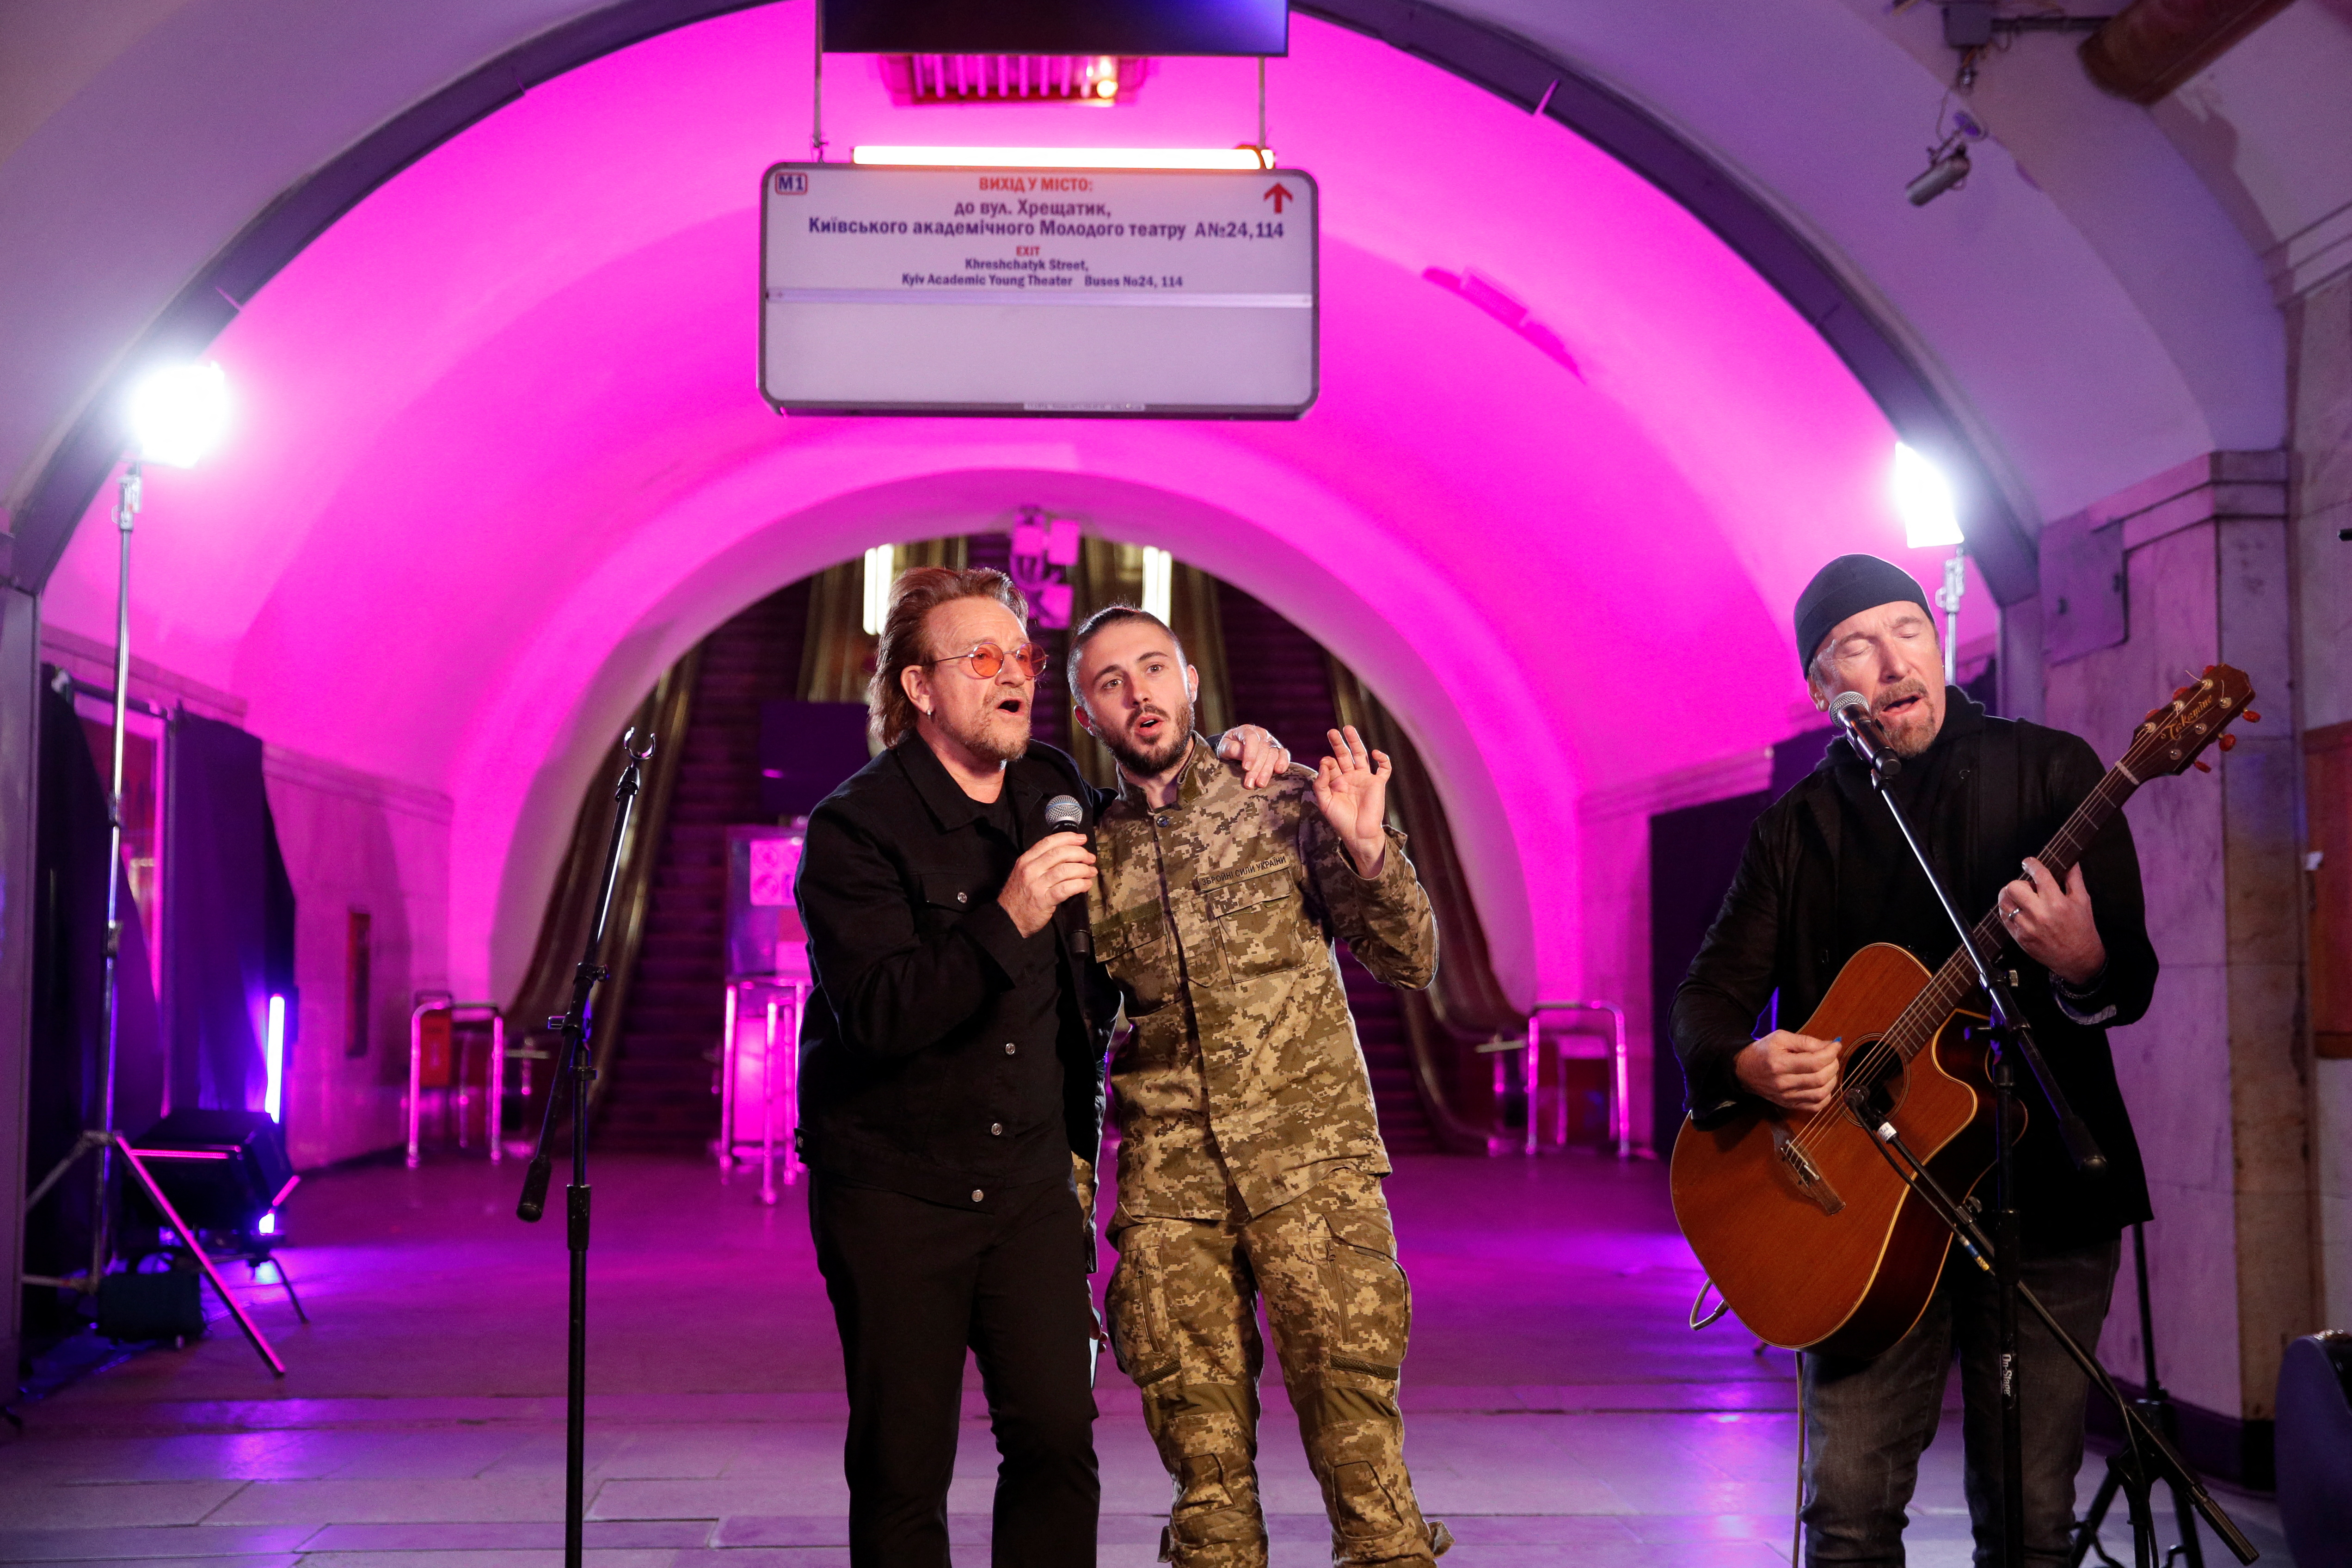 Bono y The Edge (U2) dieron un concierto a beneficio en una estación de metro de Kiev, Ucrania, a pedido del presidente Zelensky, para generar consciencia sobre la invasión rusa.
(REUTERS)